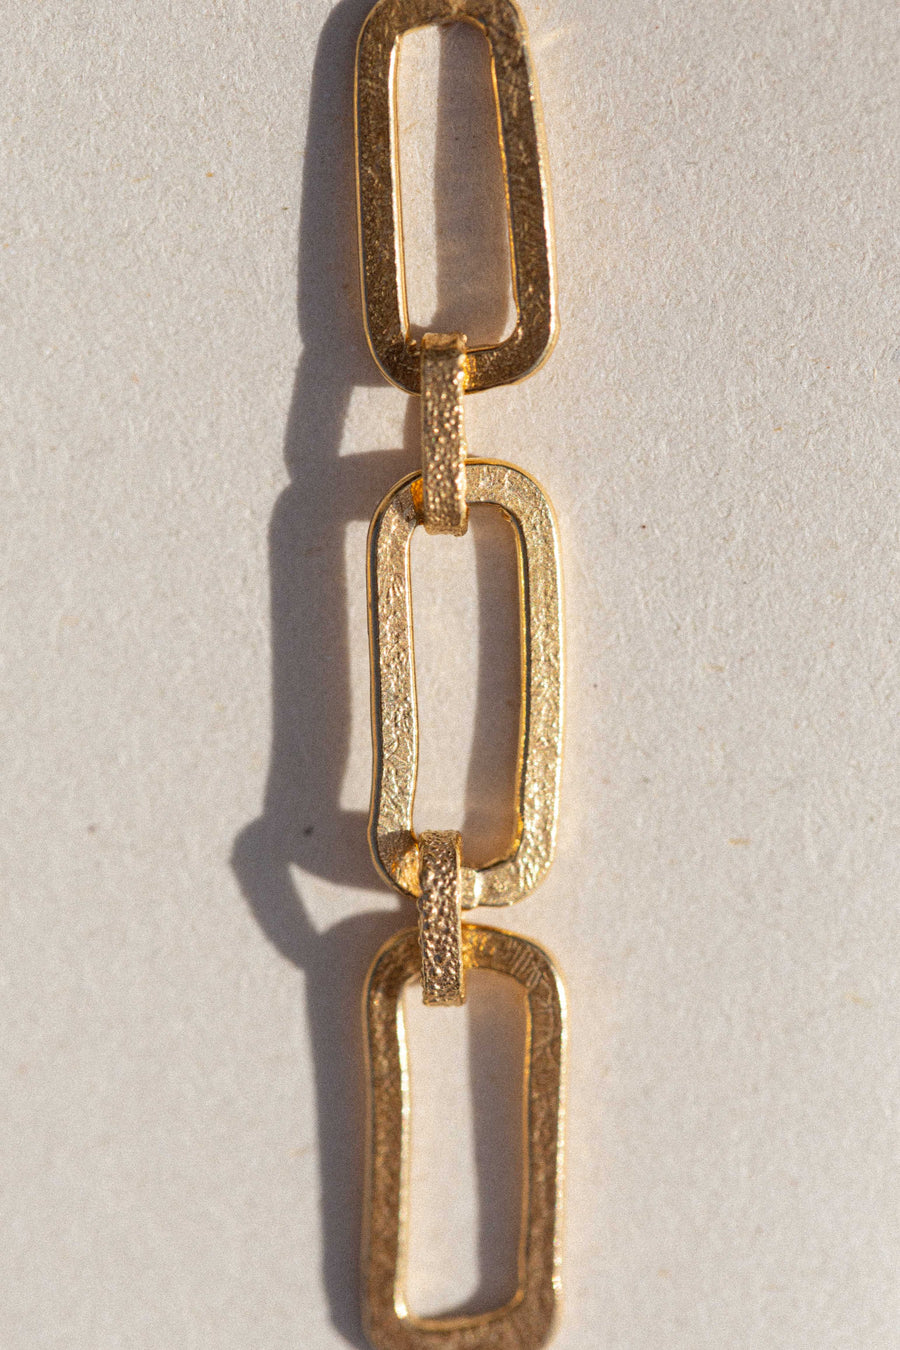 SAMSA Golden Chain Earrings